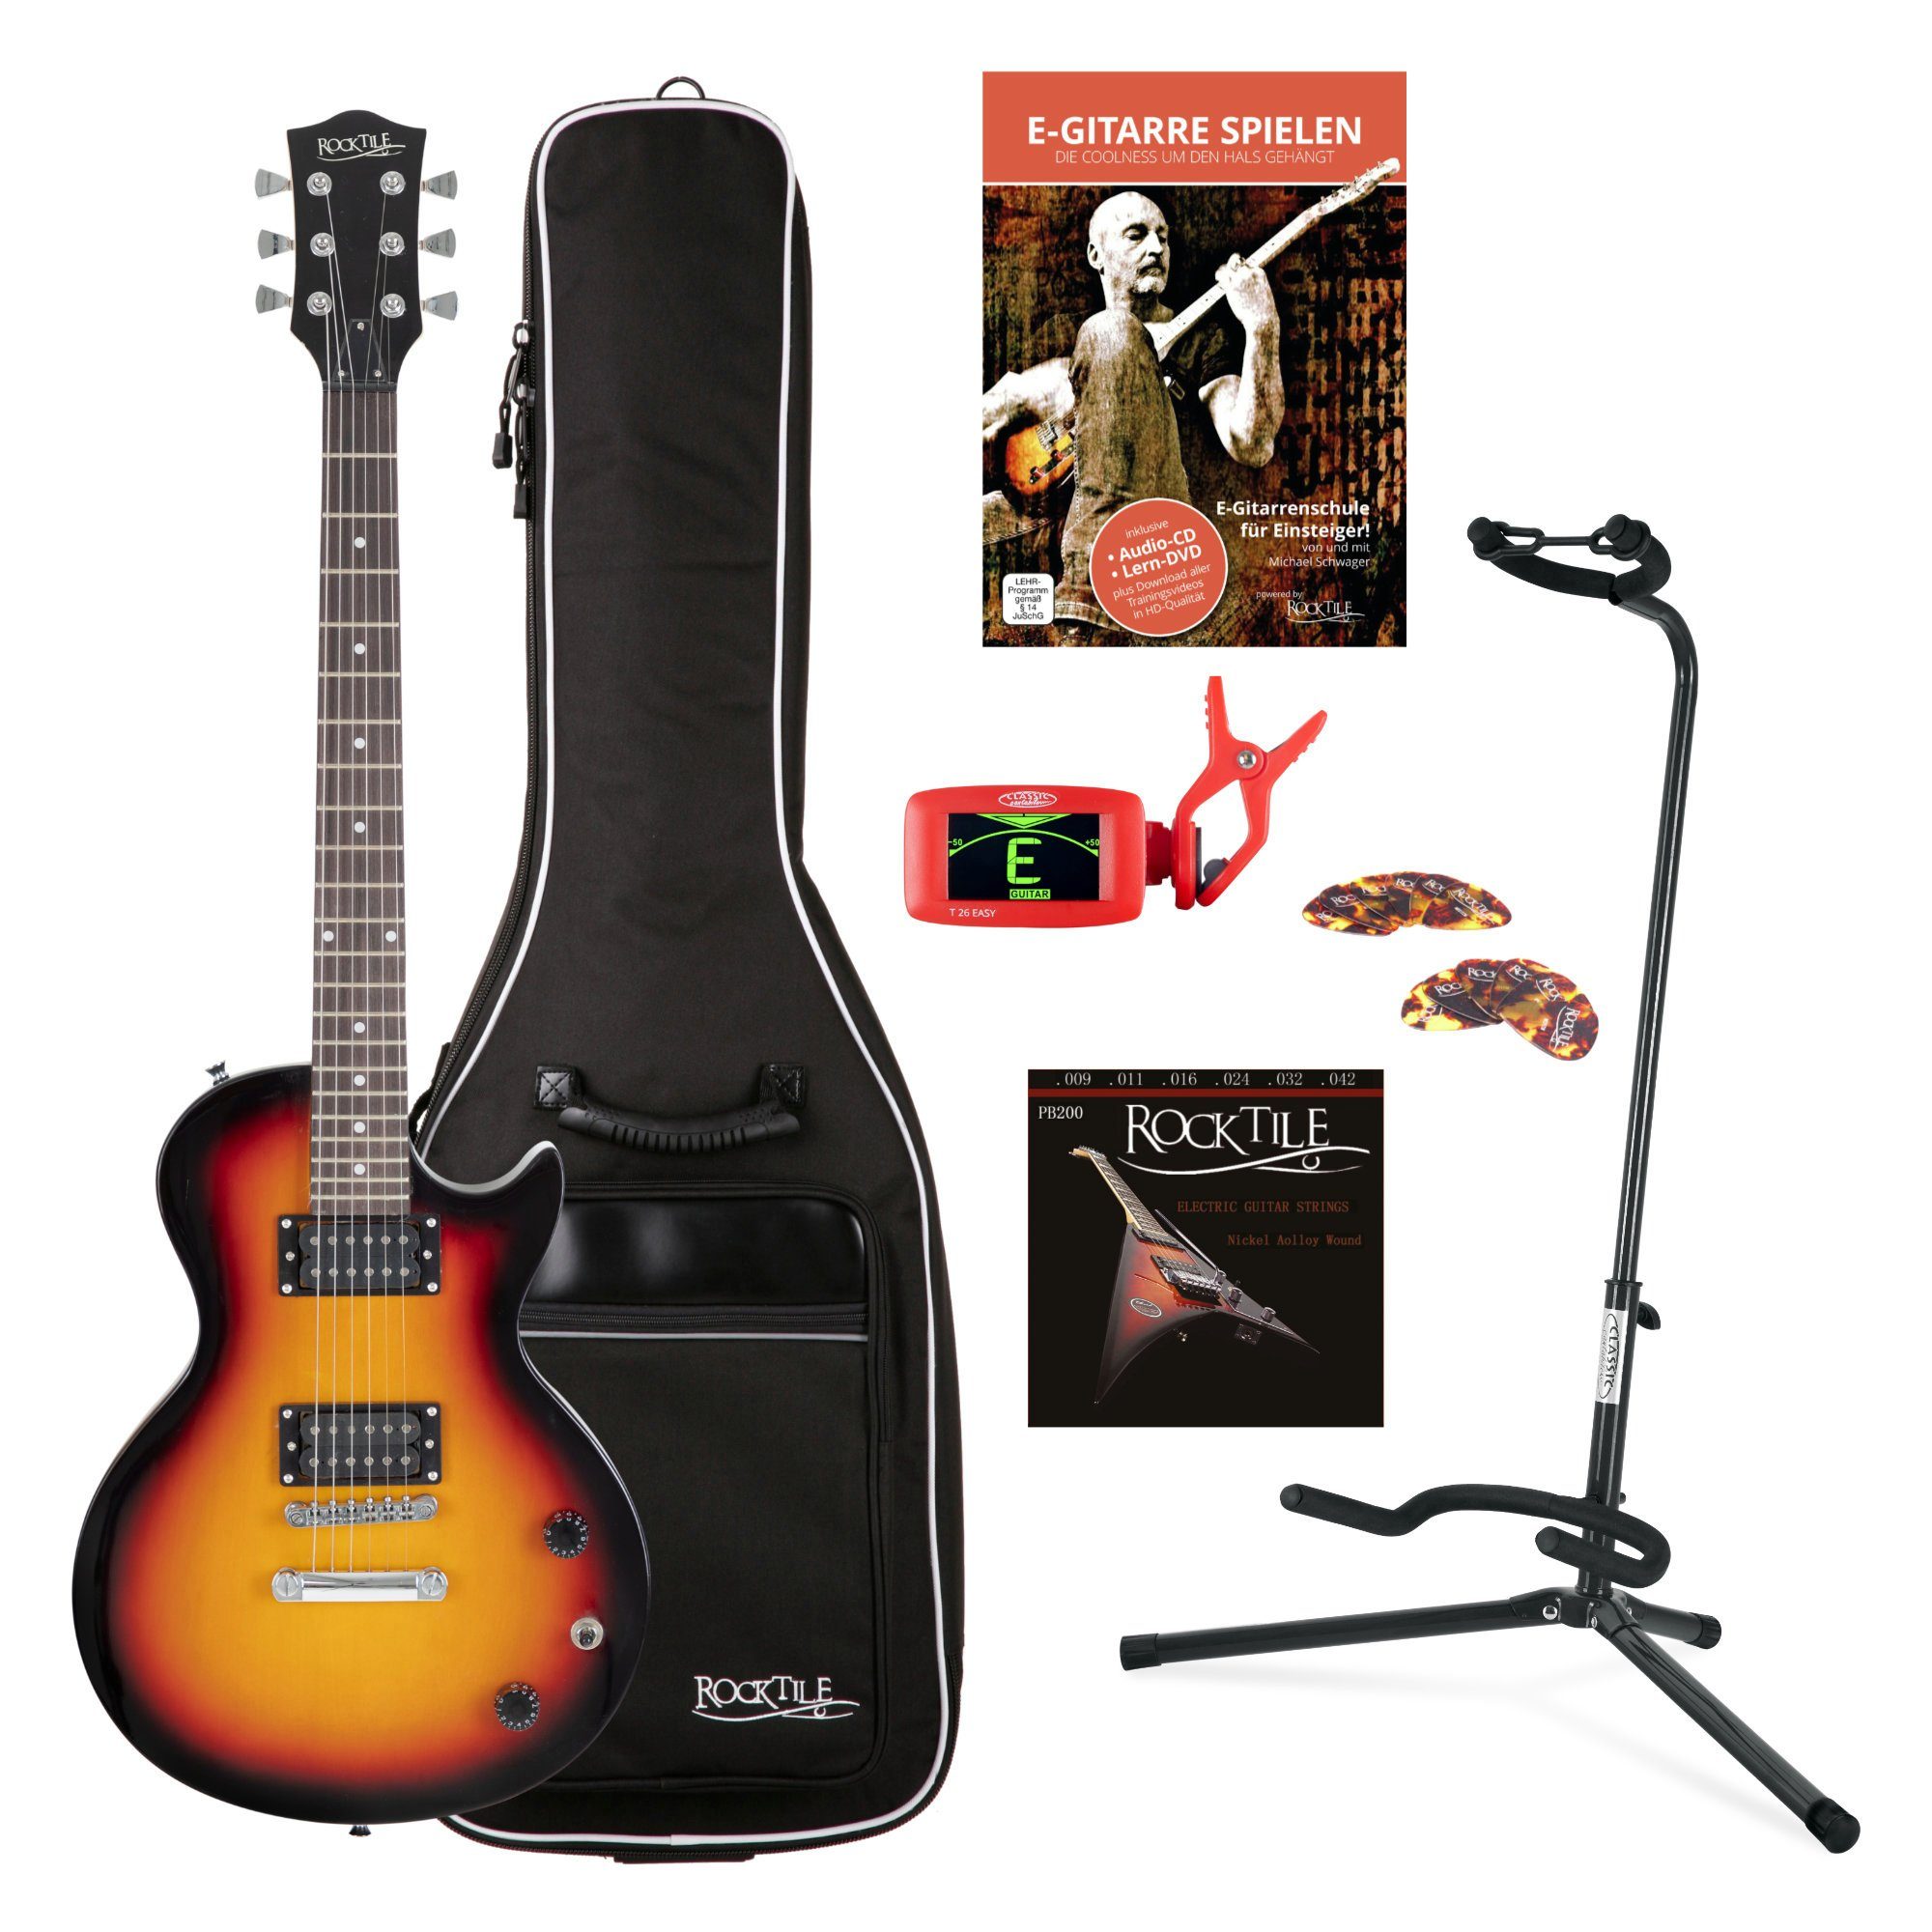 Rocktile E-Gitarre LP-100 elektrische Gitarre Set 4/4, inkl. Gigbag,  Ständer, Saiten, Tuner, Plektren